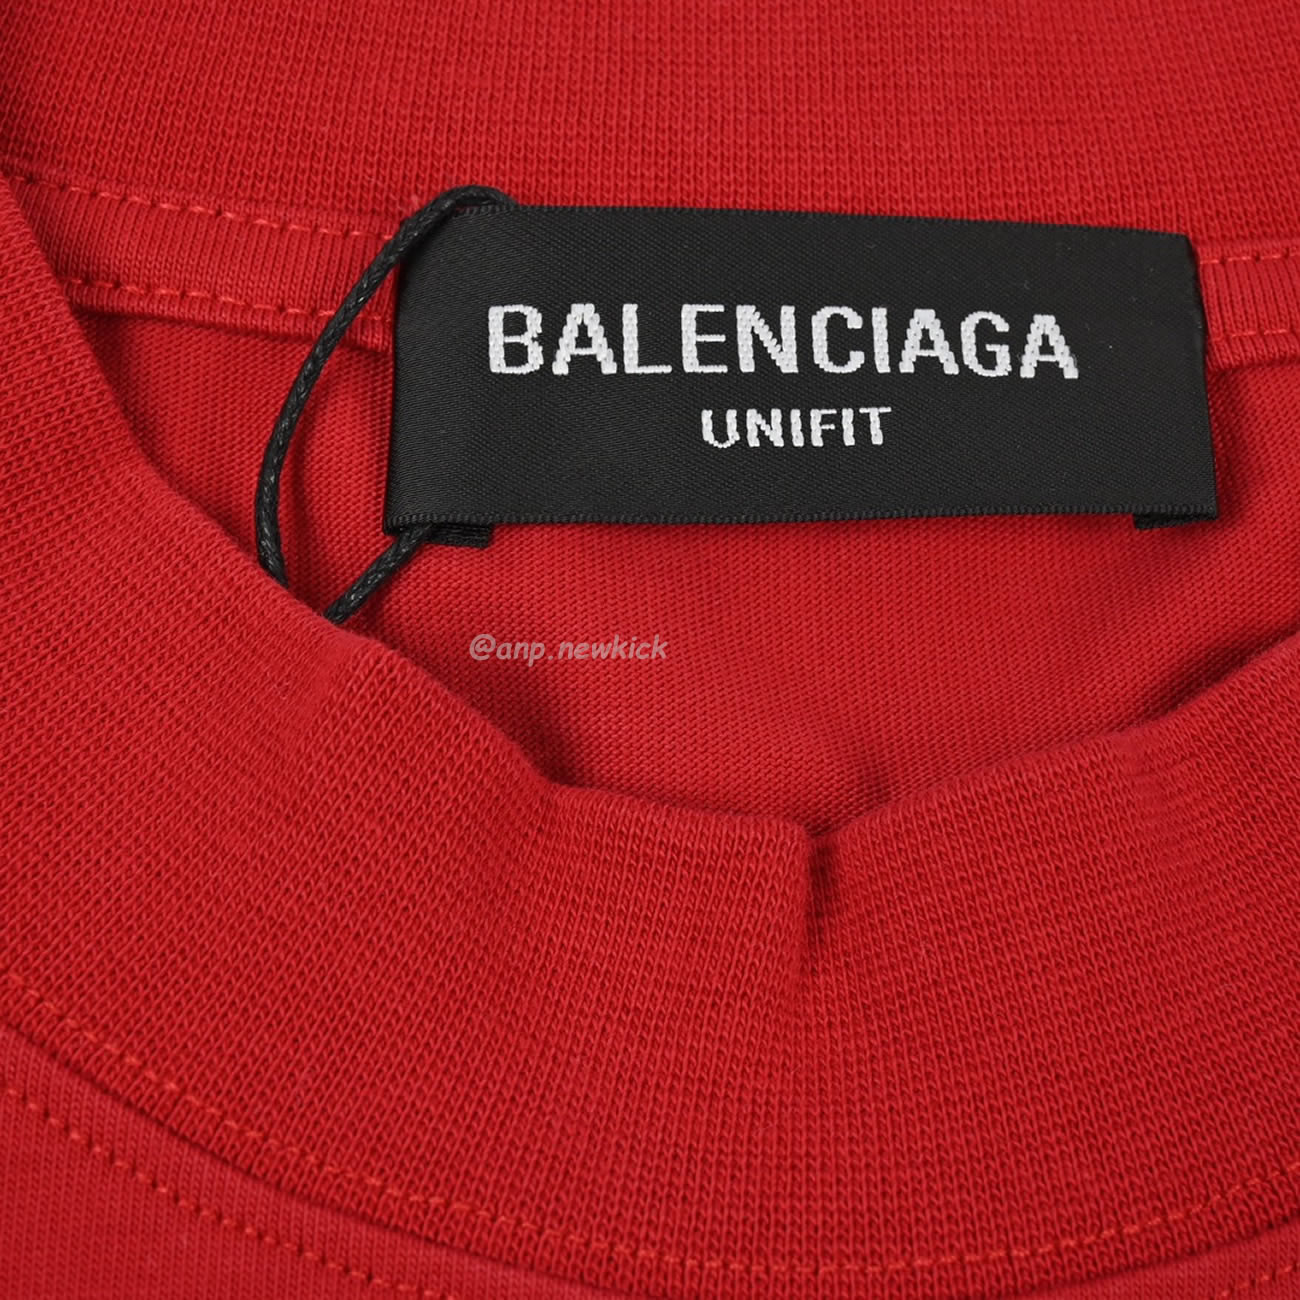 Balenciaga 24ss Gothic Printed Short Sleeves T Shirt (5) - newkick.org